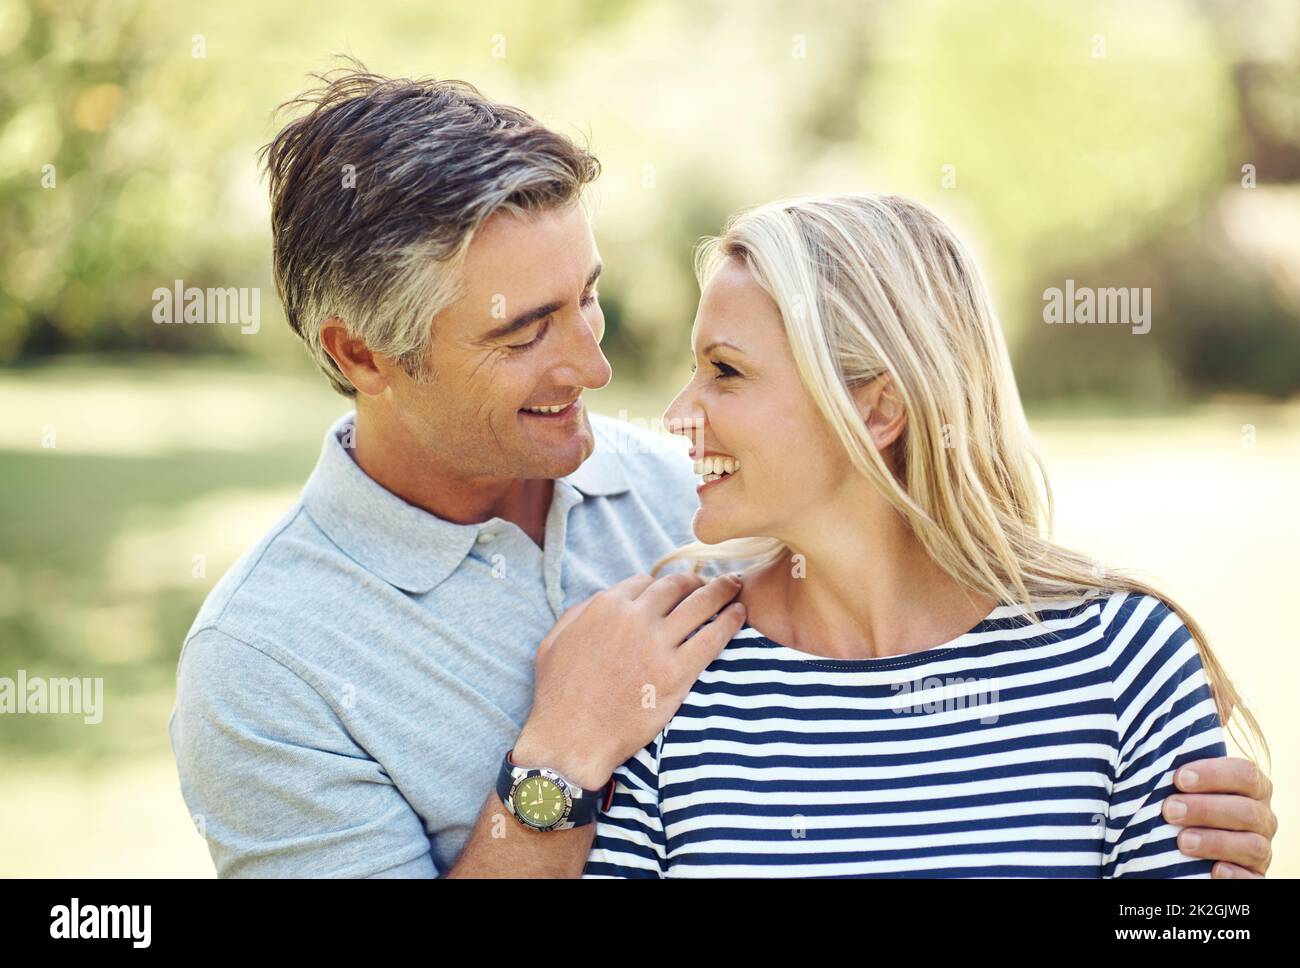 L'amour est dans l'air. Photo courte d'un couple affectueux et mature qui profite d'une journée dans le parc. Banque D'Images